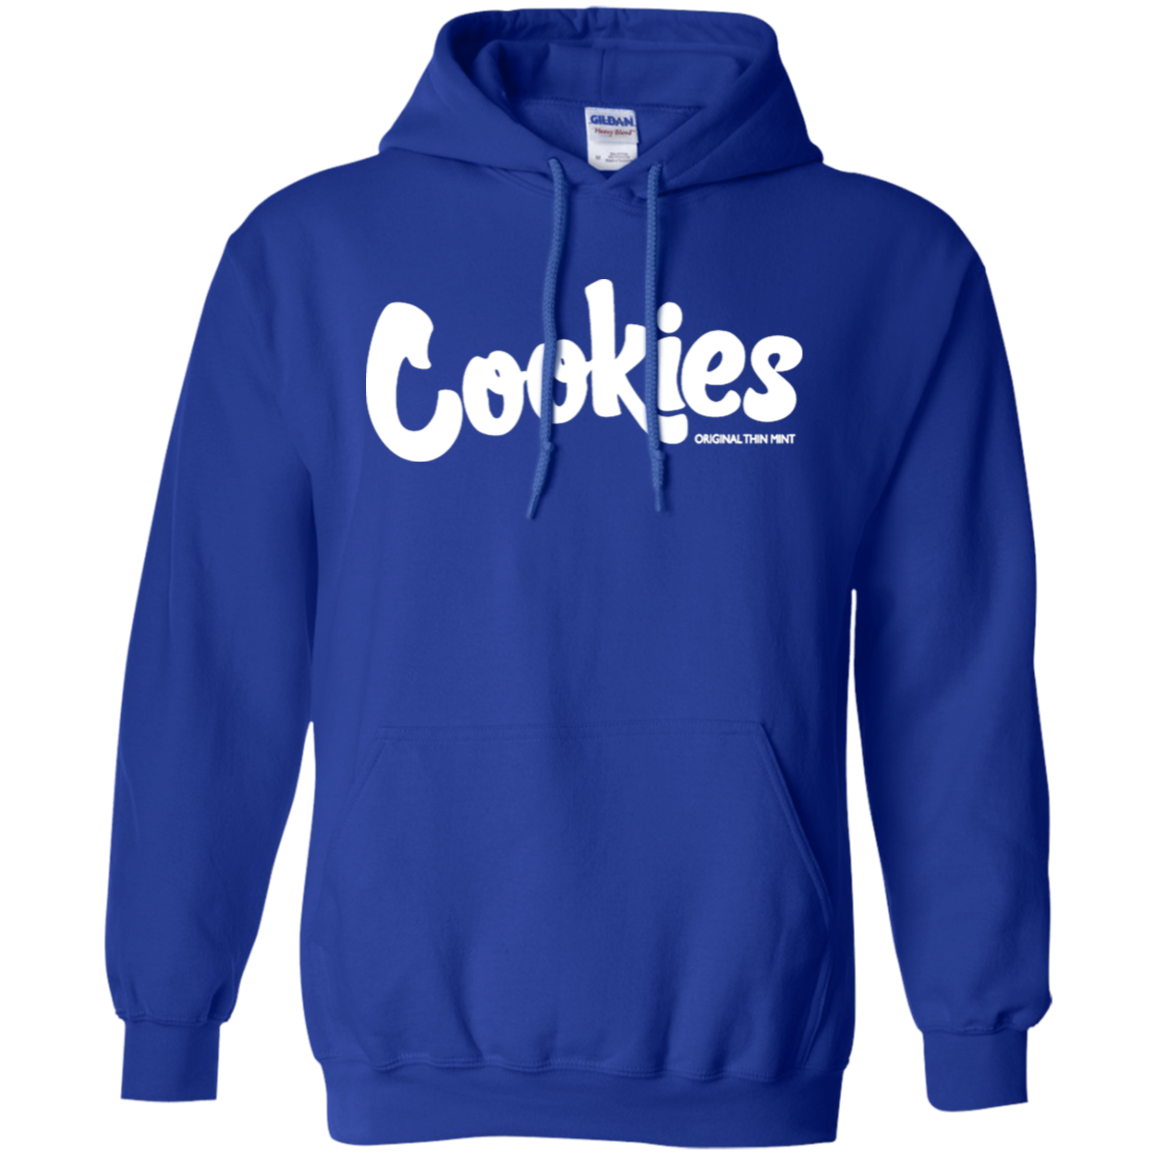 blue cookies hoodie